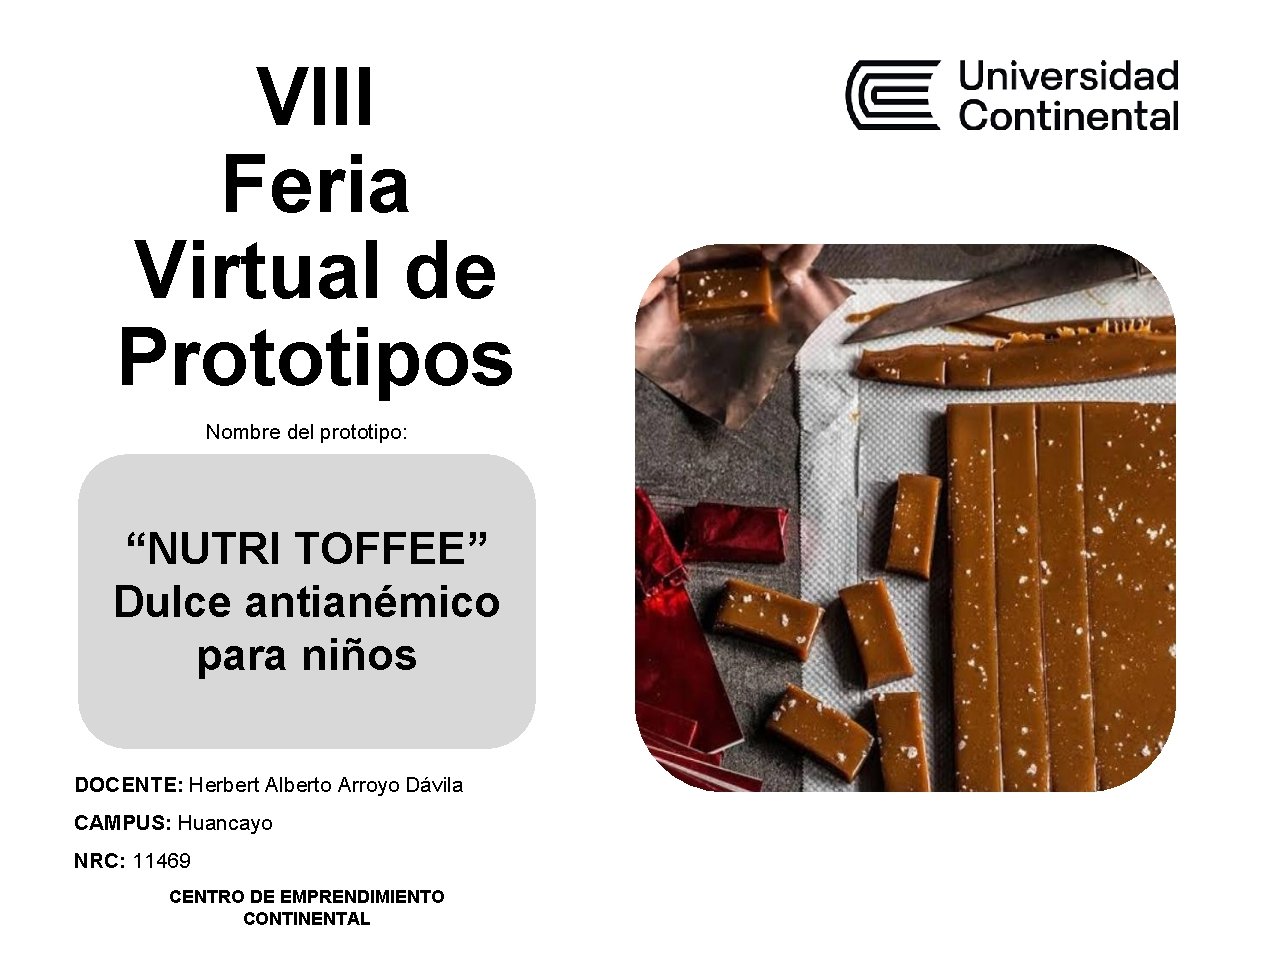 VIII Feria Virtual de Prototipos Nombre del prototipo: “NUTRI TOFFEE” Dulce antianémico para niños